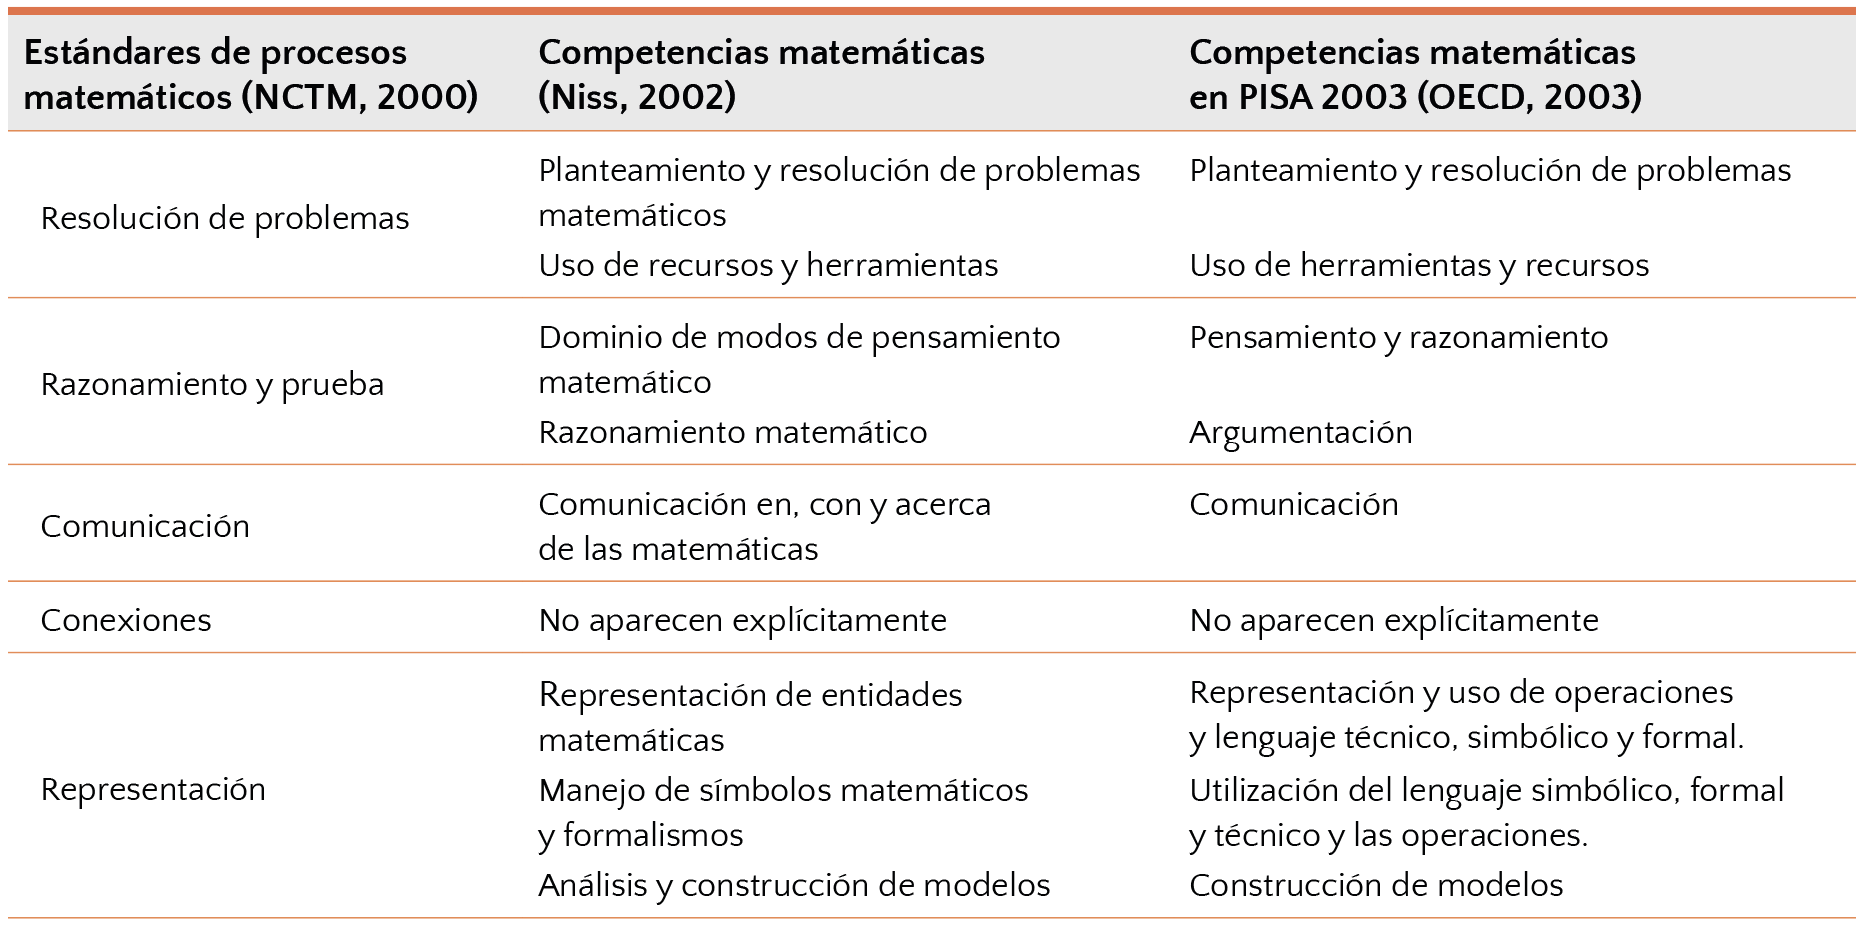 Comparación entre los estándares de procesos y las competencias matemáticas (Alsina, 2019, p. 25)